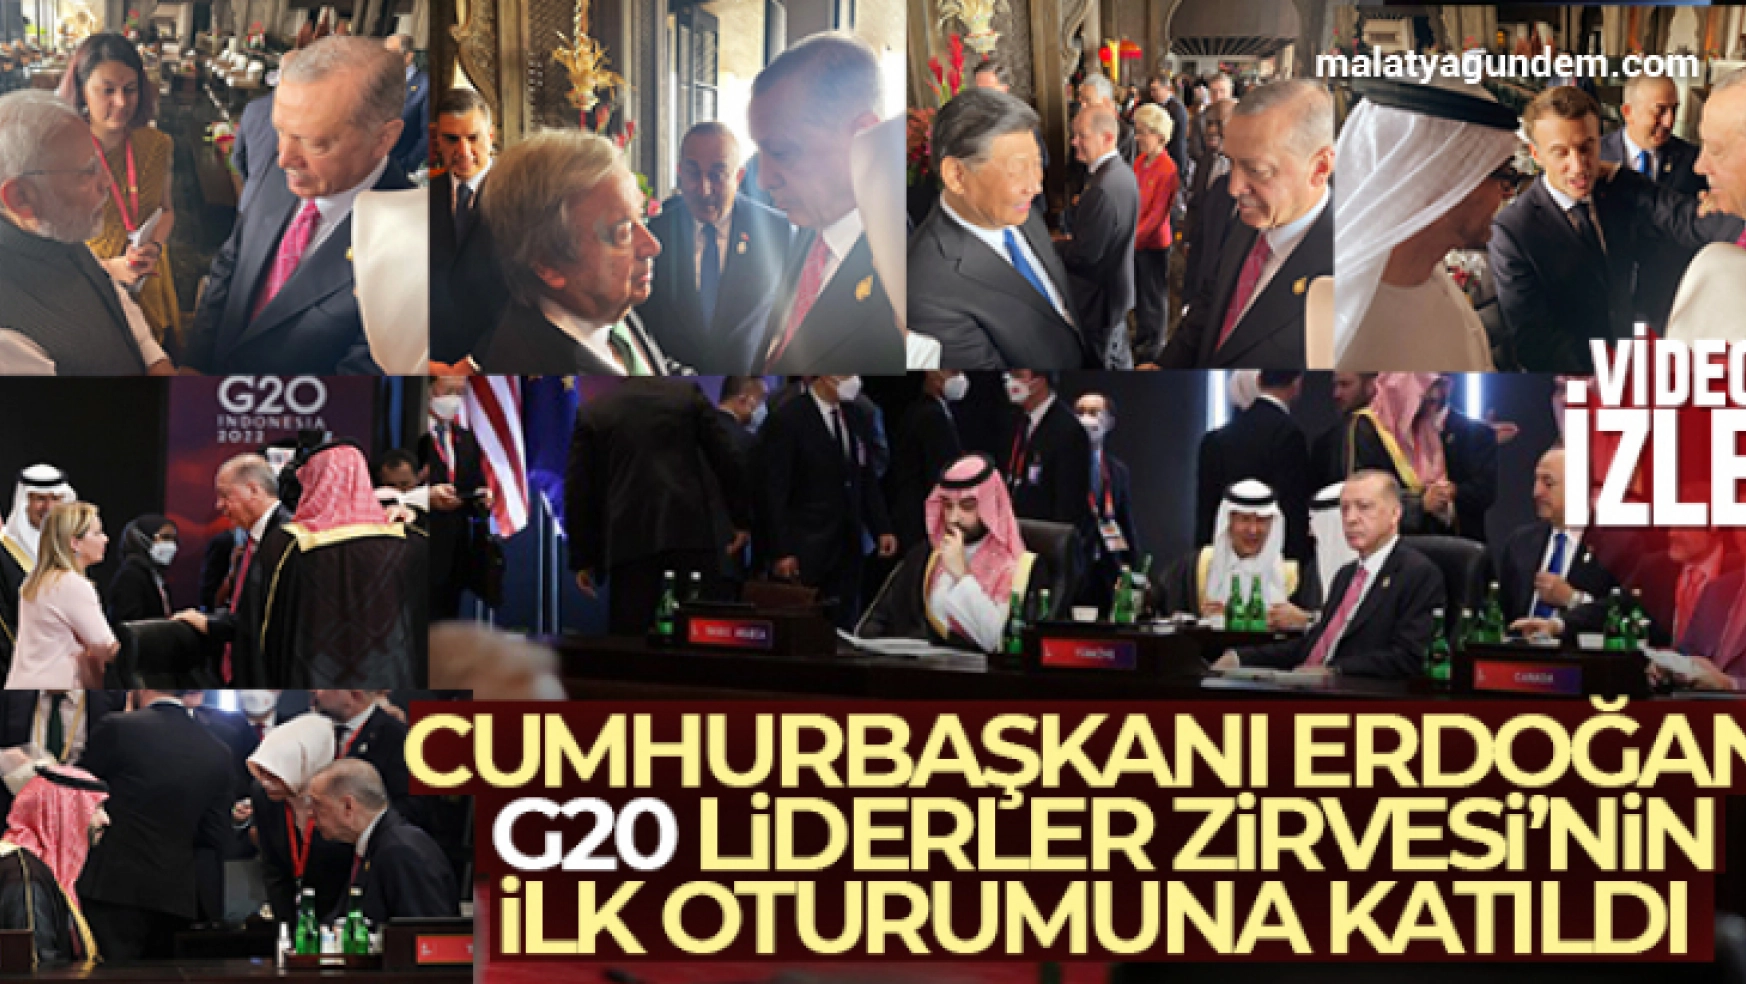 Cumhurbaşkanı Erdoğan, G20 Liderler Zirvesi'nin ilk oturumuna katıldı